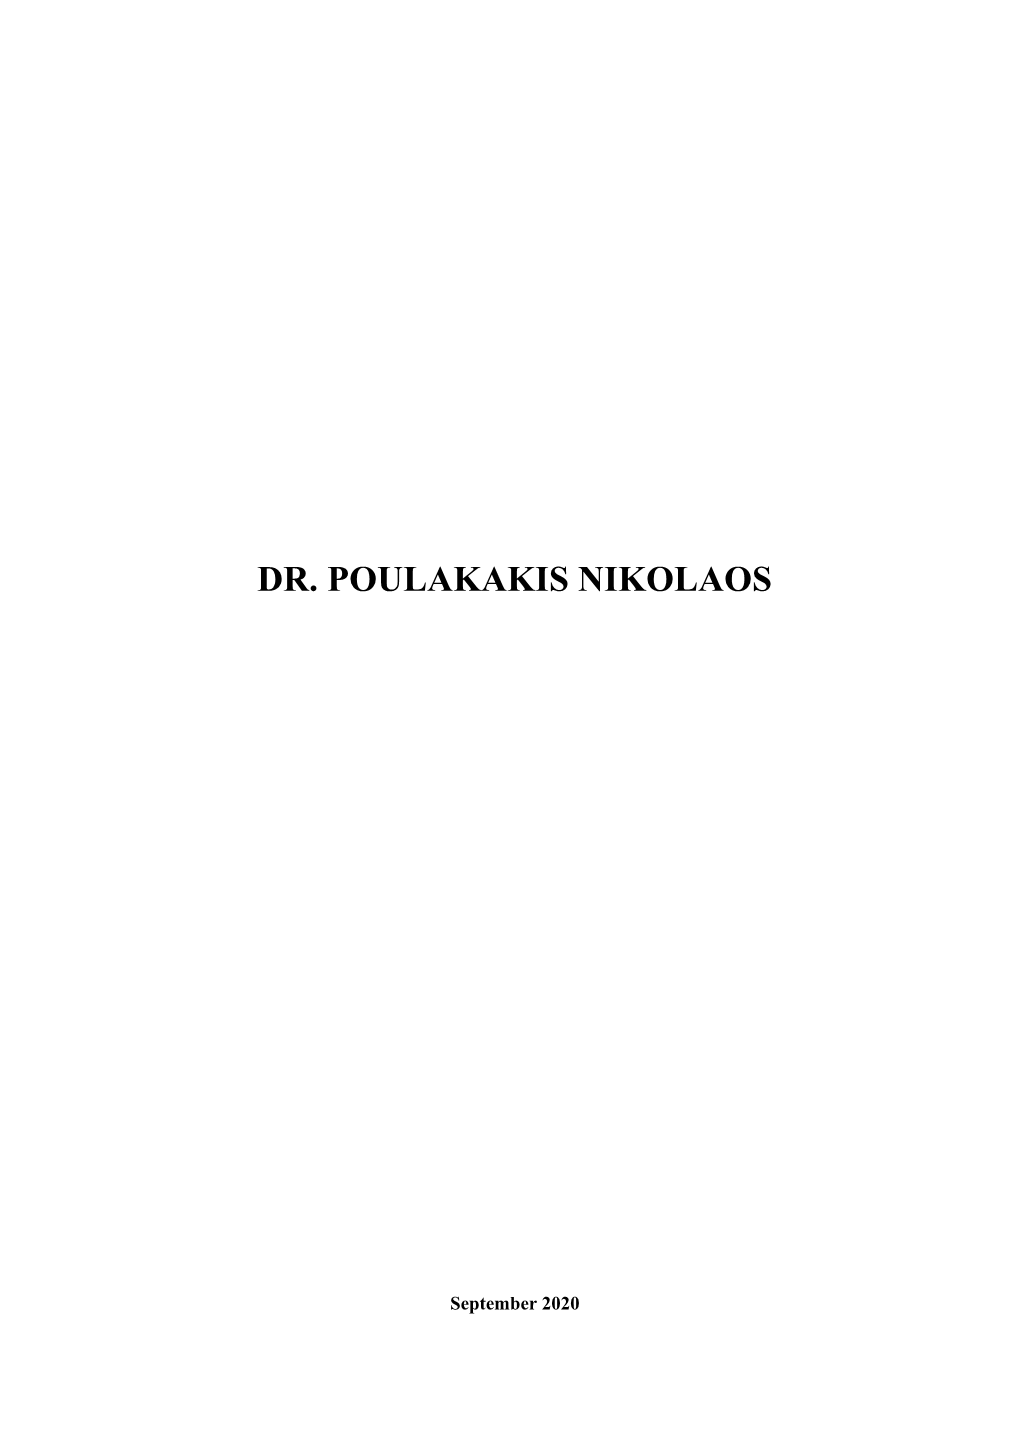 Dr. Poulakakis Nikolaos